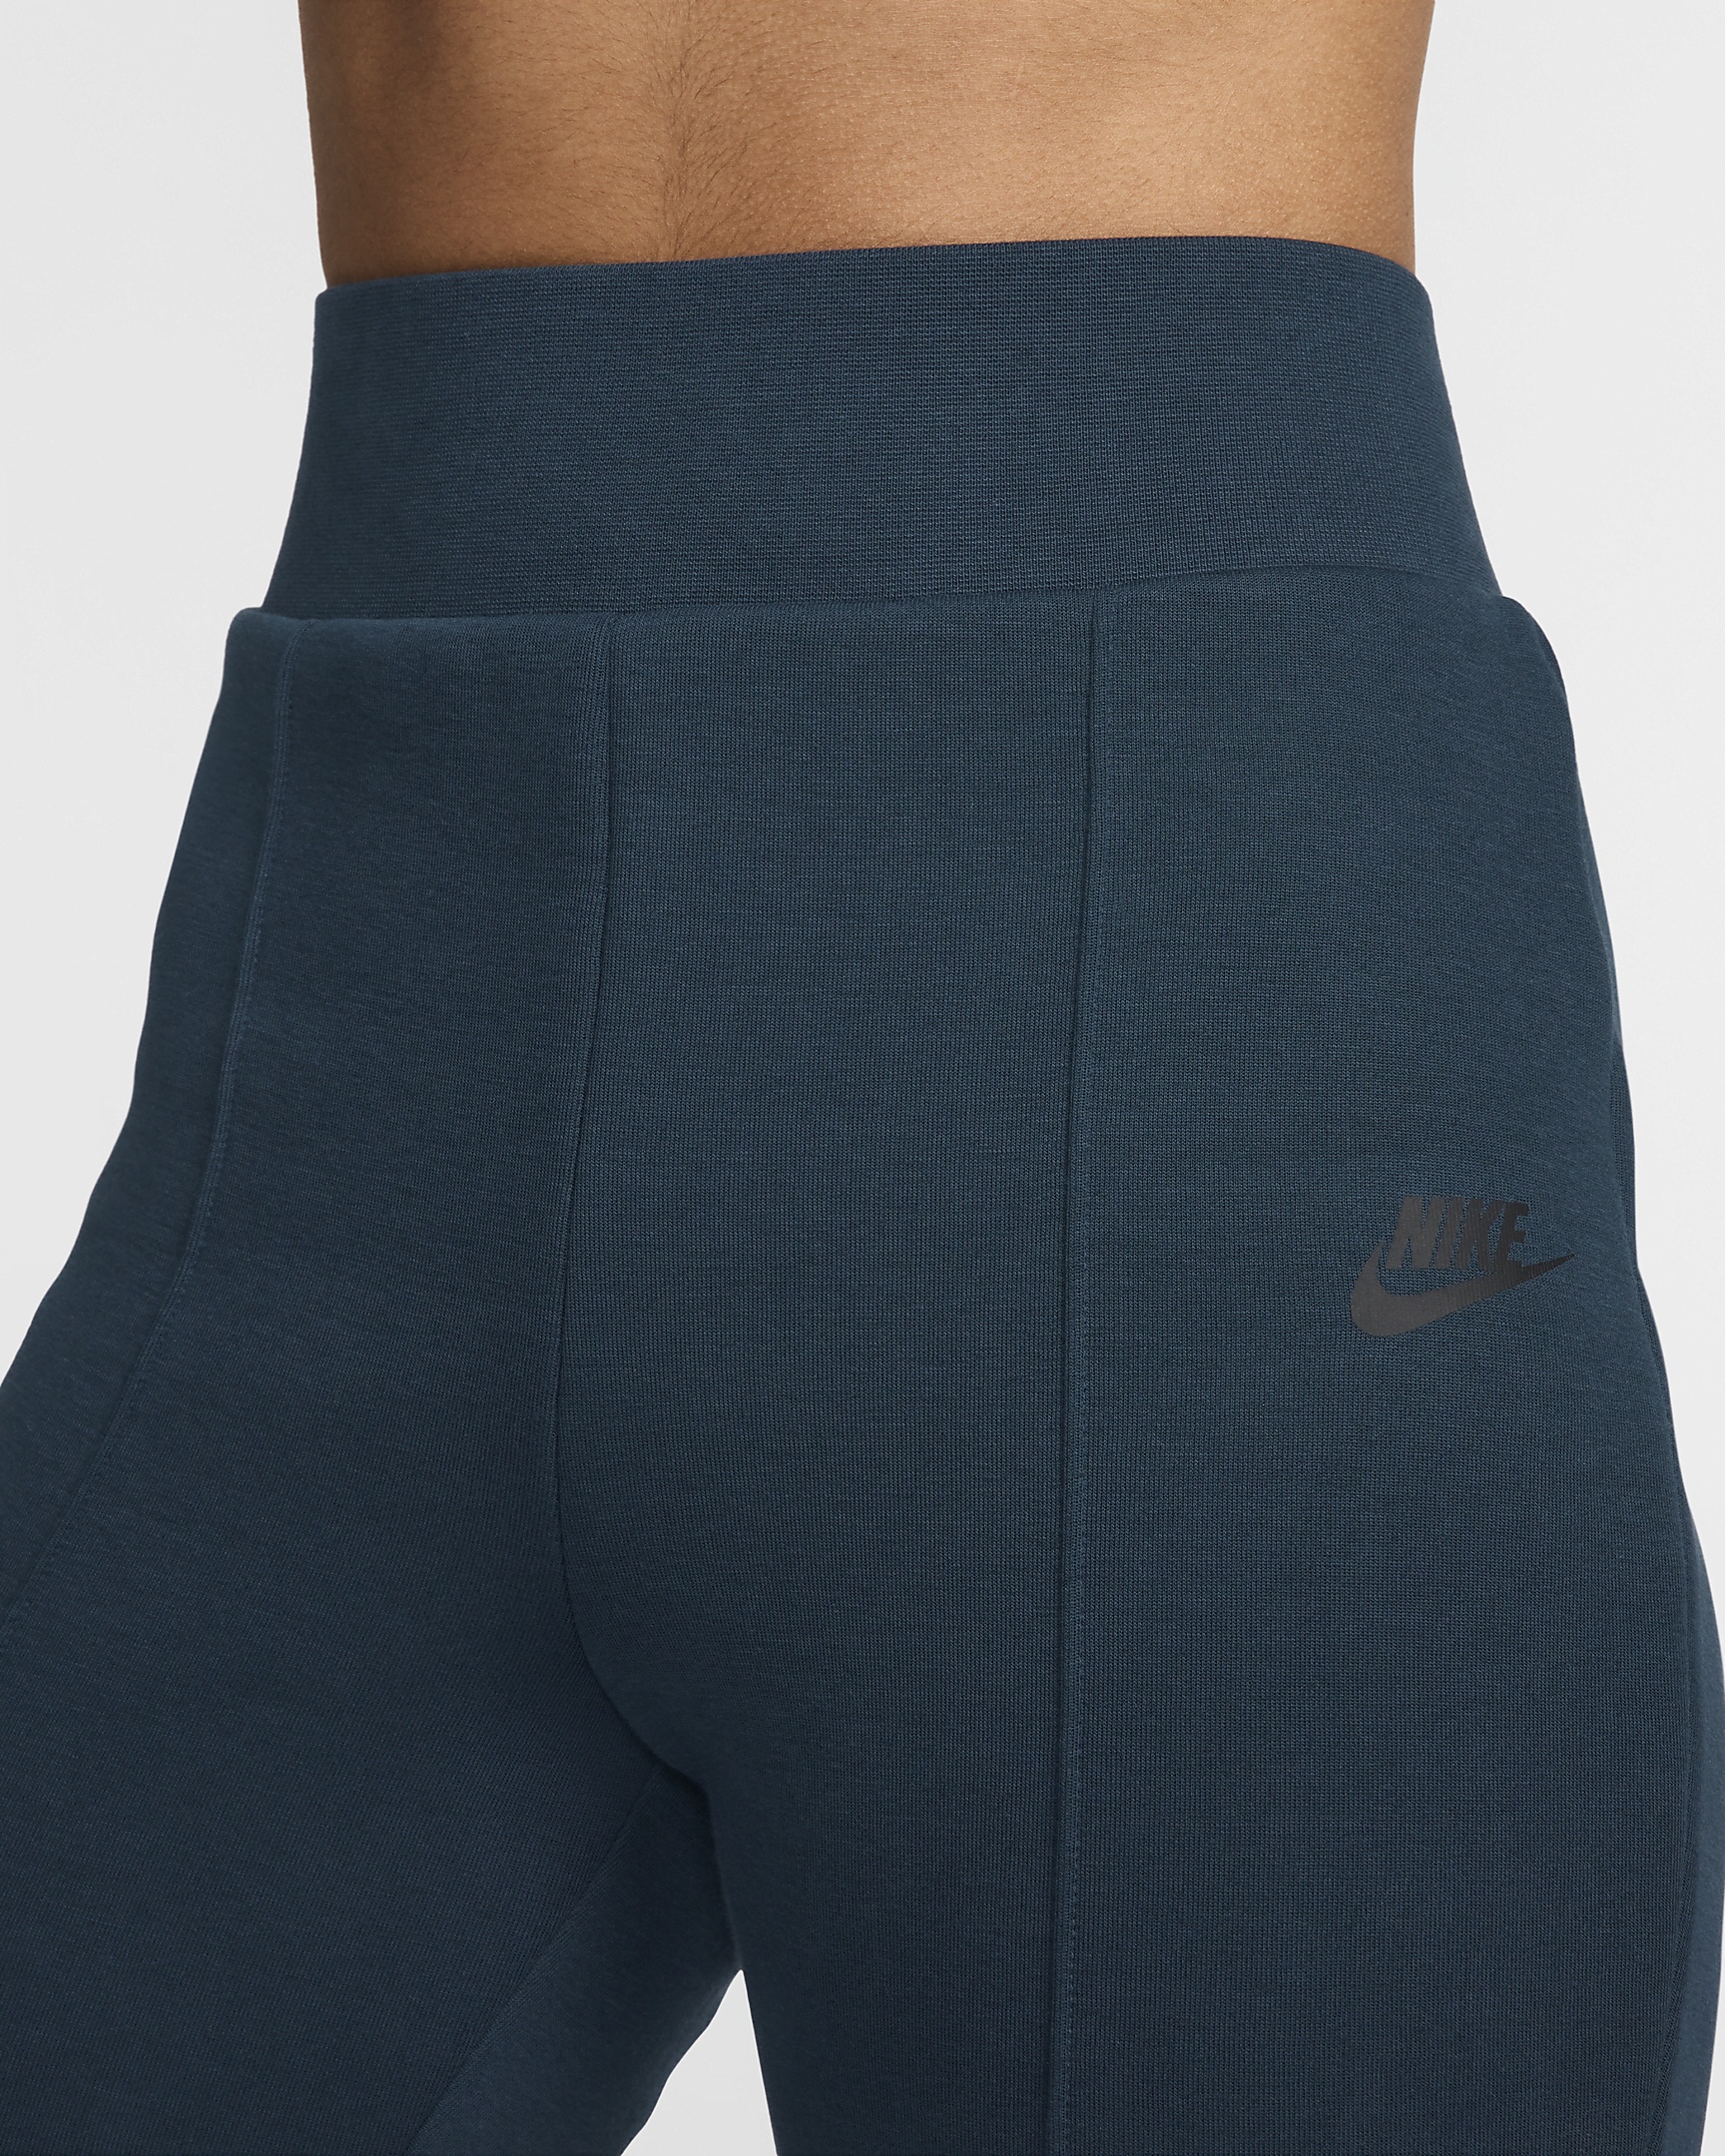 Nike Sportswear Tech Fleece Women's High-Waisted Slim Pants - 3